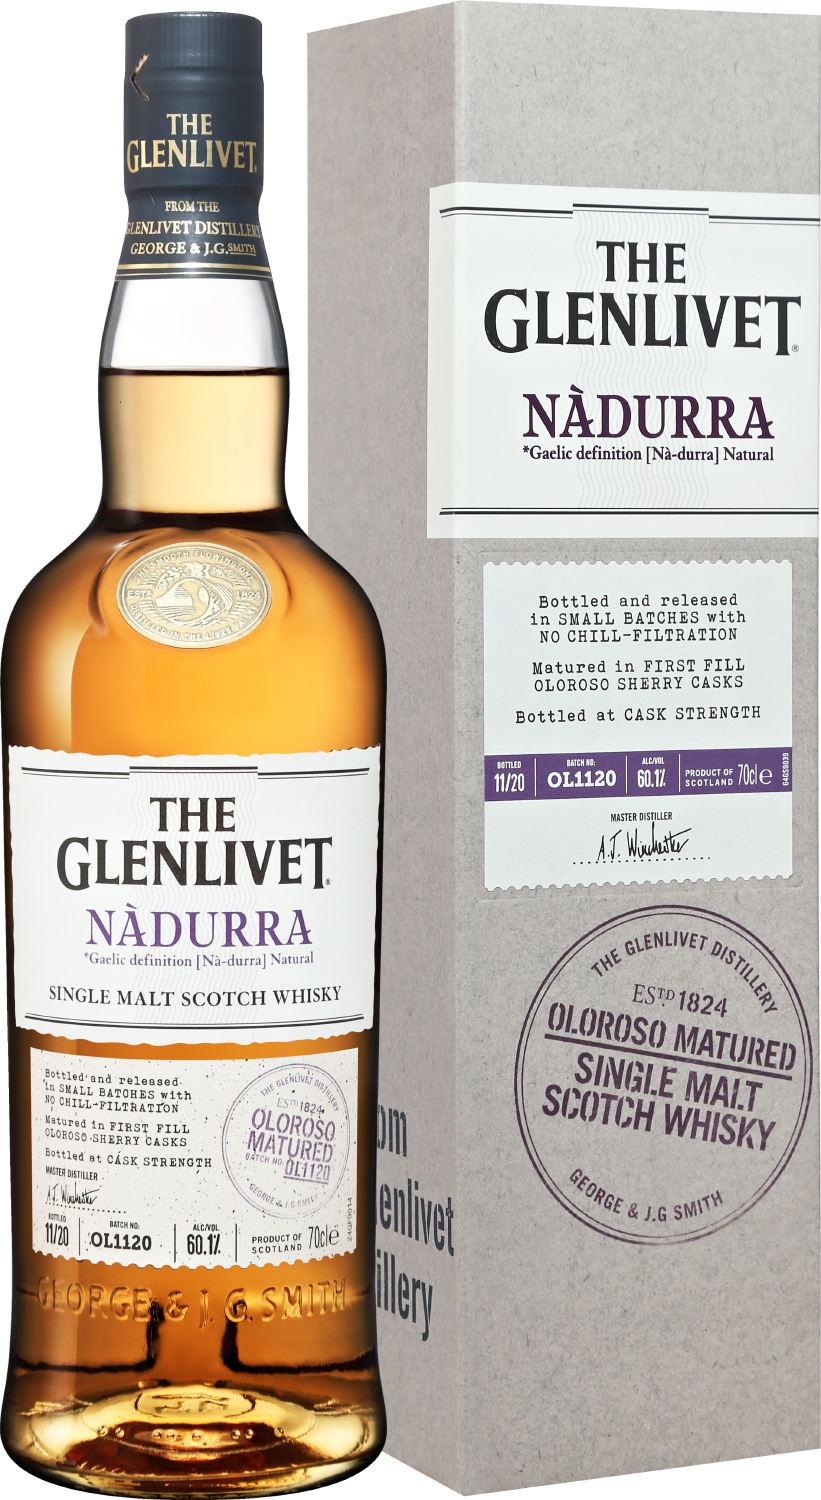 The Glenlivet Nadurra Oloroso Matured Single Malt Scotch Whisky (gift box) the glenlivet single malt scotch whisky 18 y o gift box